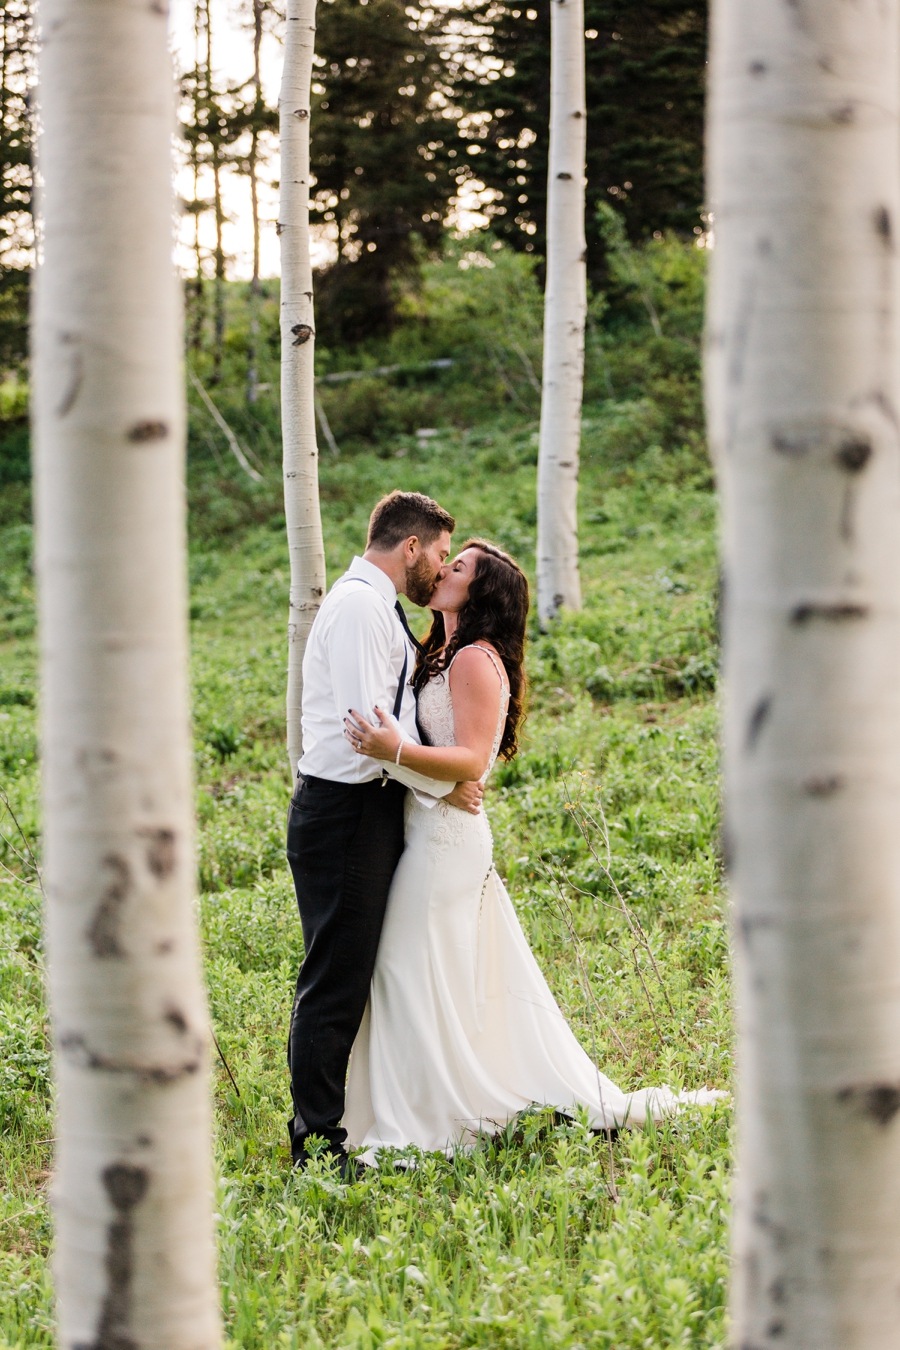 A bride and groom stroll through an aspen grove at Grand Targhee, captured by Jackson Hole wedding photographer Amy Galbraith